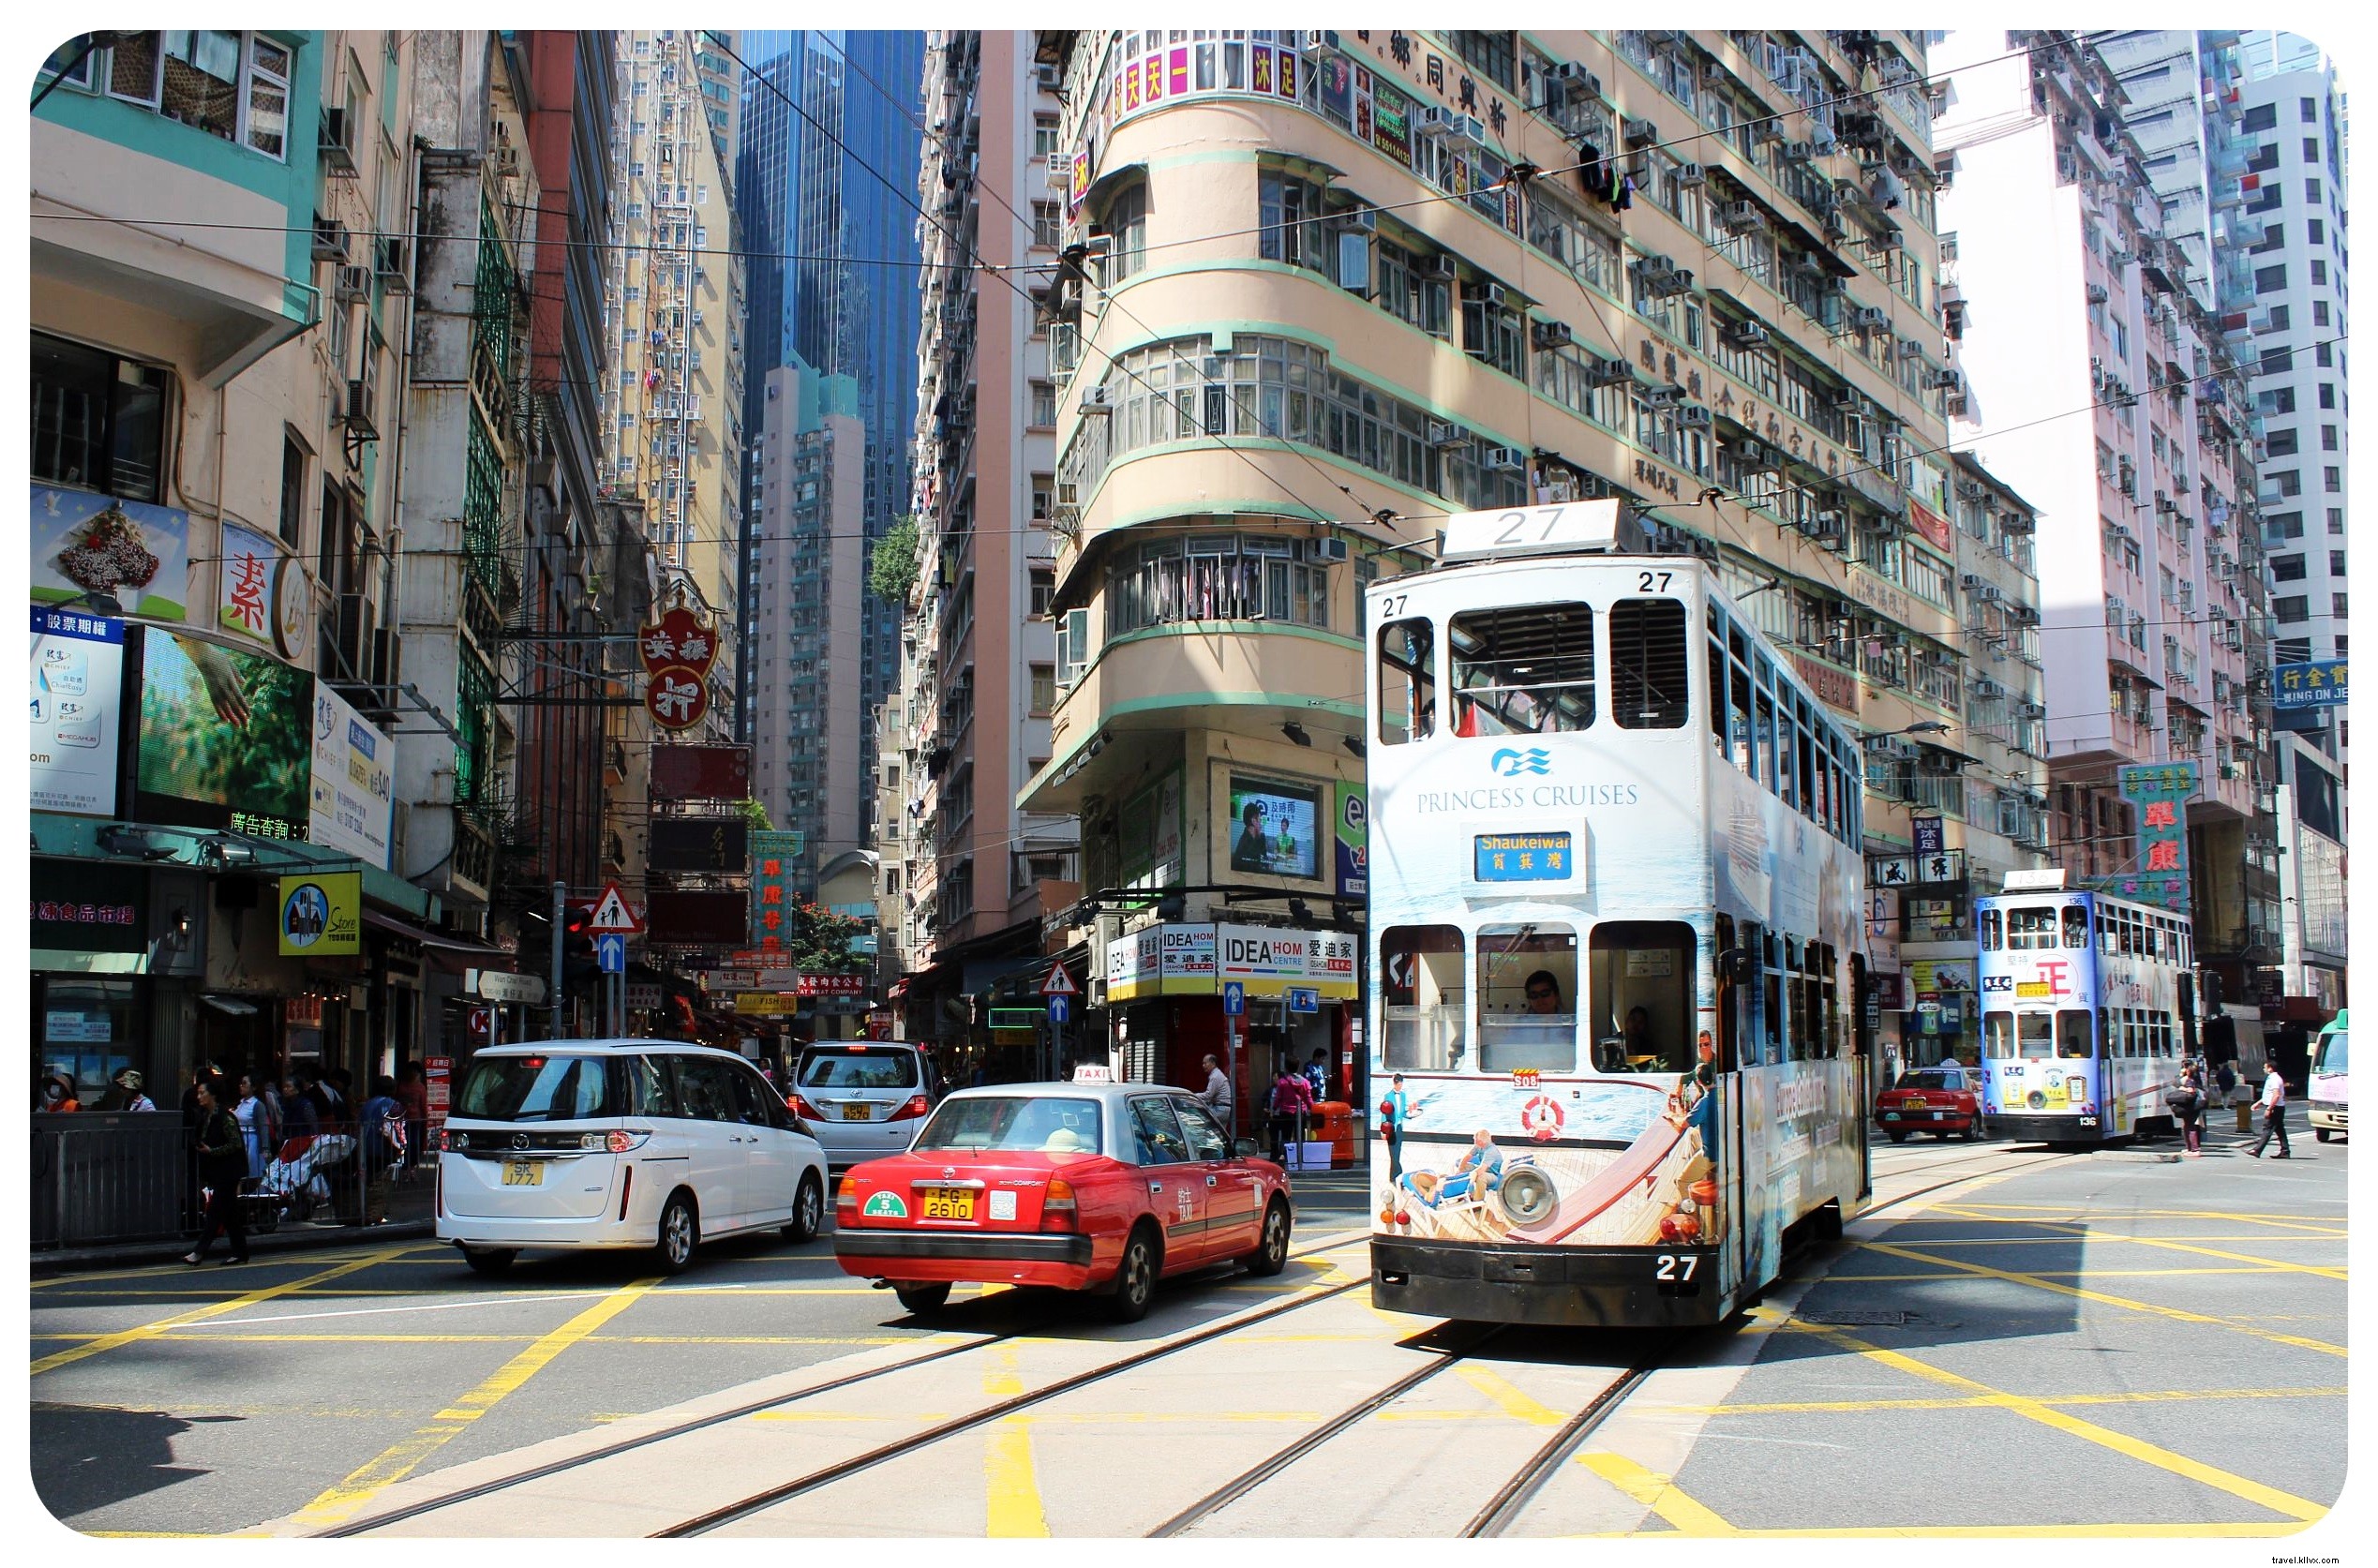 12 cosas que me sorprendieron de Hong Kong